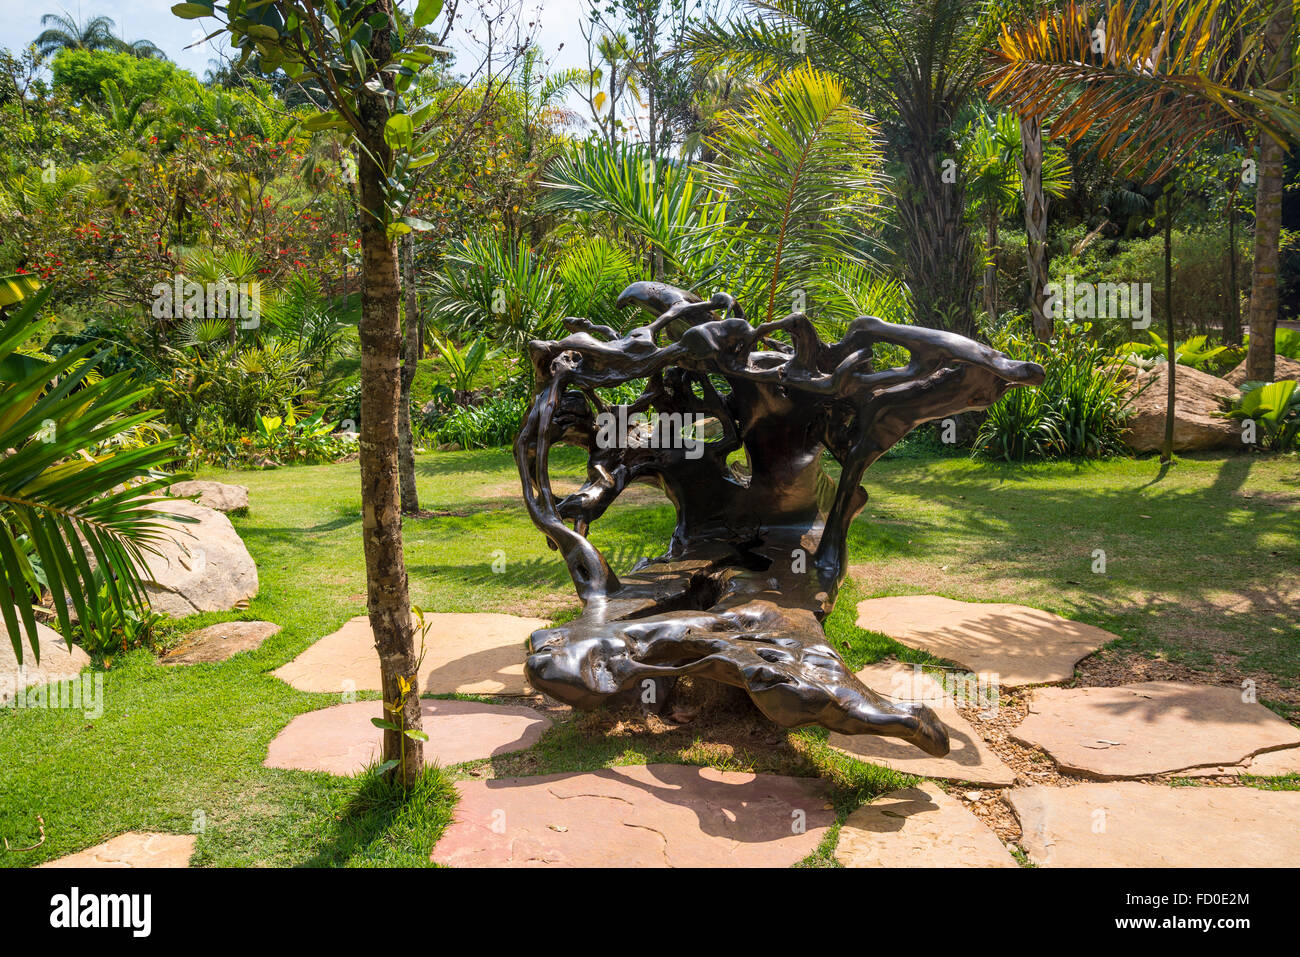 La sculpture sur bois, Inhotim Botanical Garden et musée d'art contemporain, Belo Horizonte, Minas Gerais, Brésil Banque D'Images